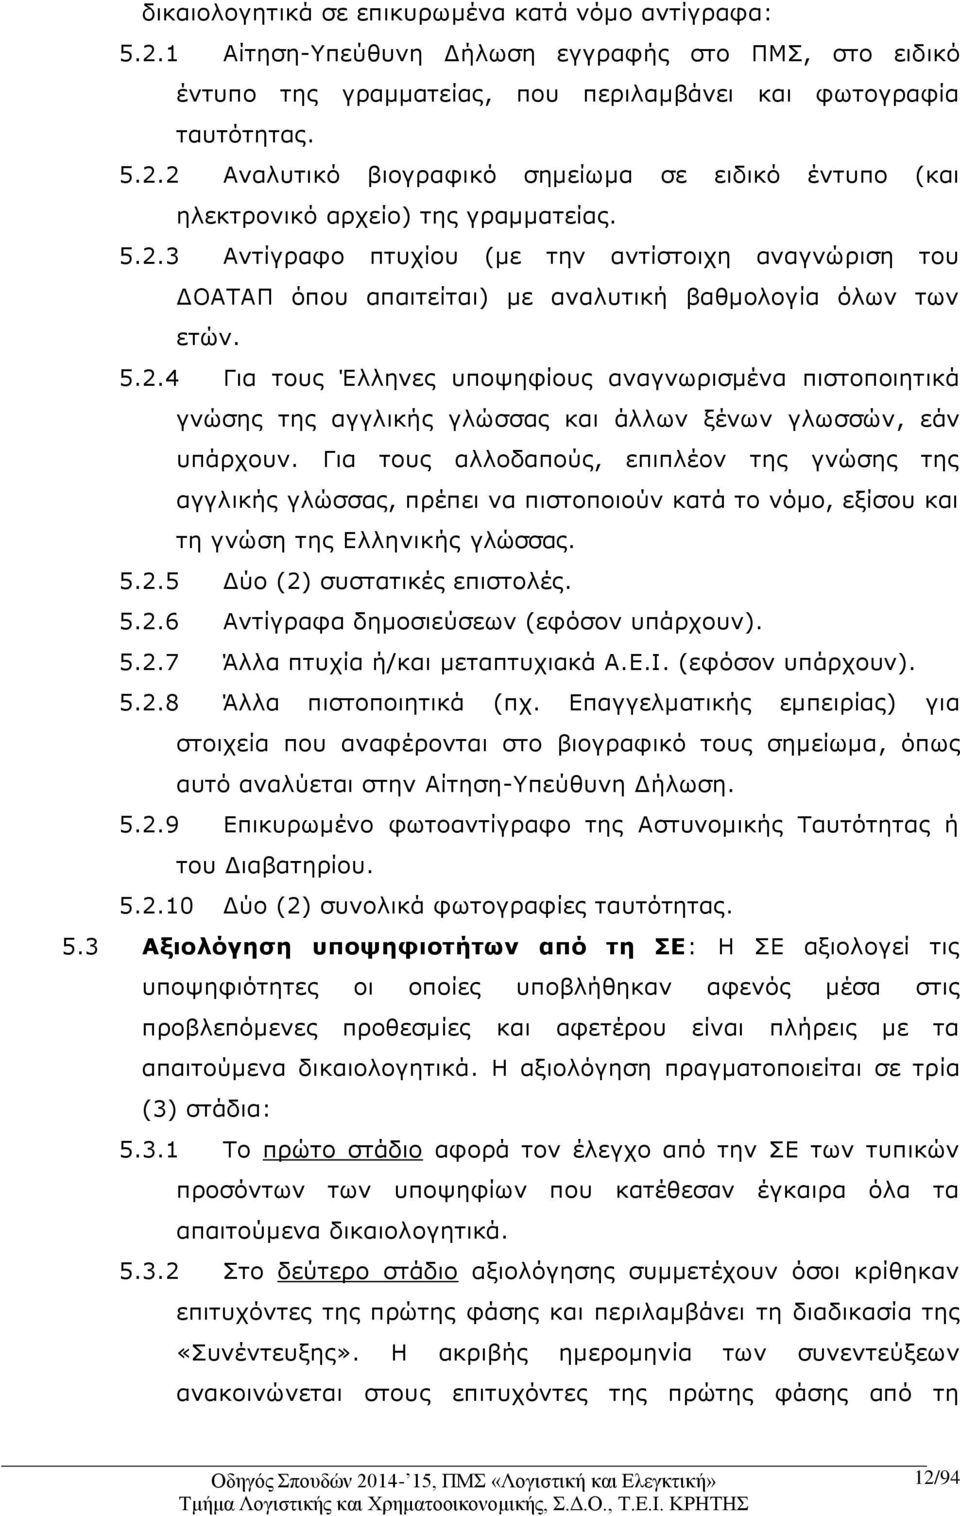 Για τους αλλοδαπούς, επιπλέον της γνώσης της αγγλικής γλώσσας, πρέπει να πιστοποιούν κατά το νόμο, εξίσου και τη γνώση της Ελληνικής γλώσσας. 5.2.5 Δύο (2) συστατικές επιστολές. 5.2.6 Αντίγραφα δημοσιεύσεων (εφόσον υπάρχουν).